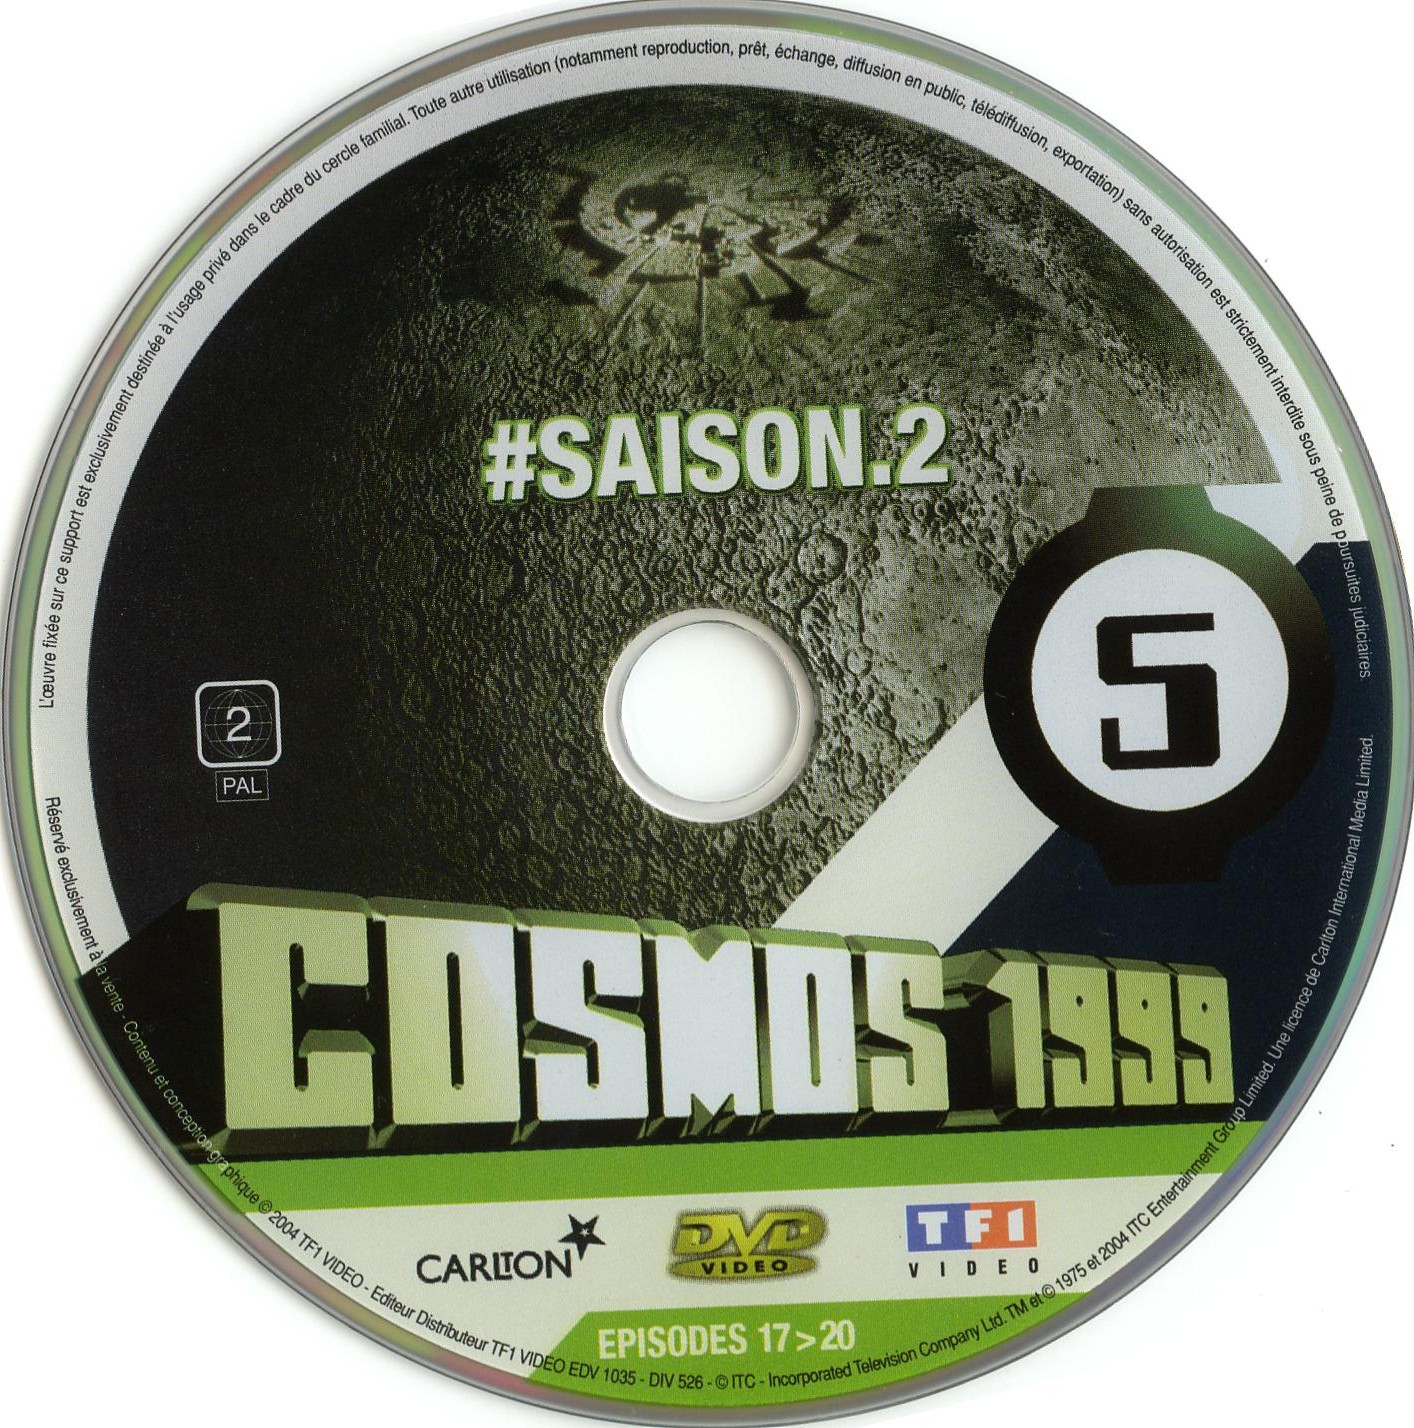 Cosmos 1999 saison 2 dvd 5